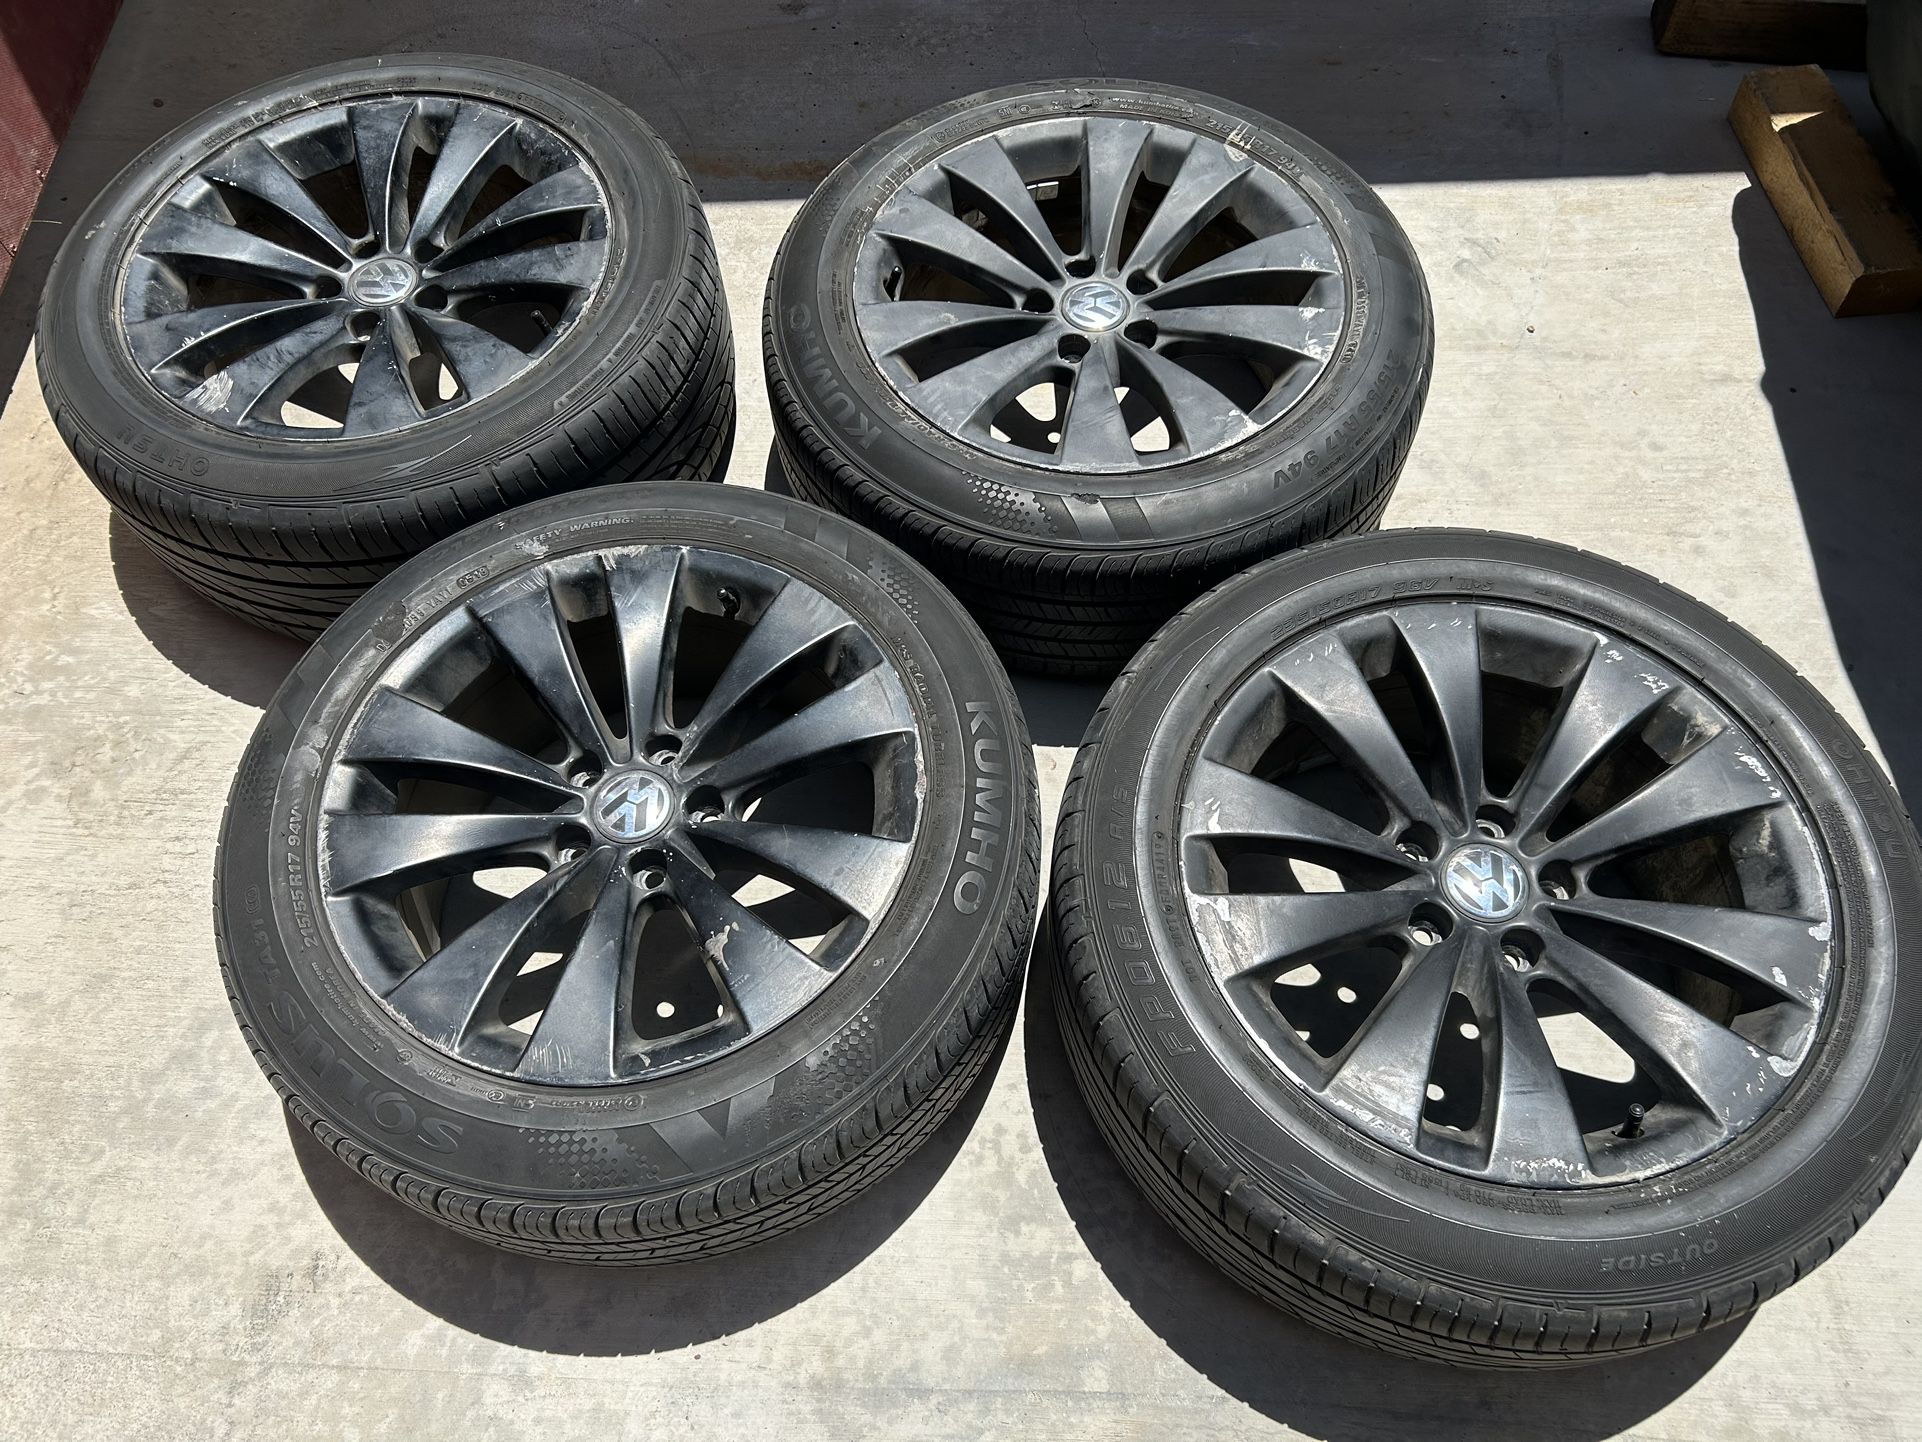 Volkswagen Wheels And Tires